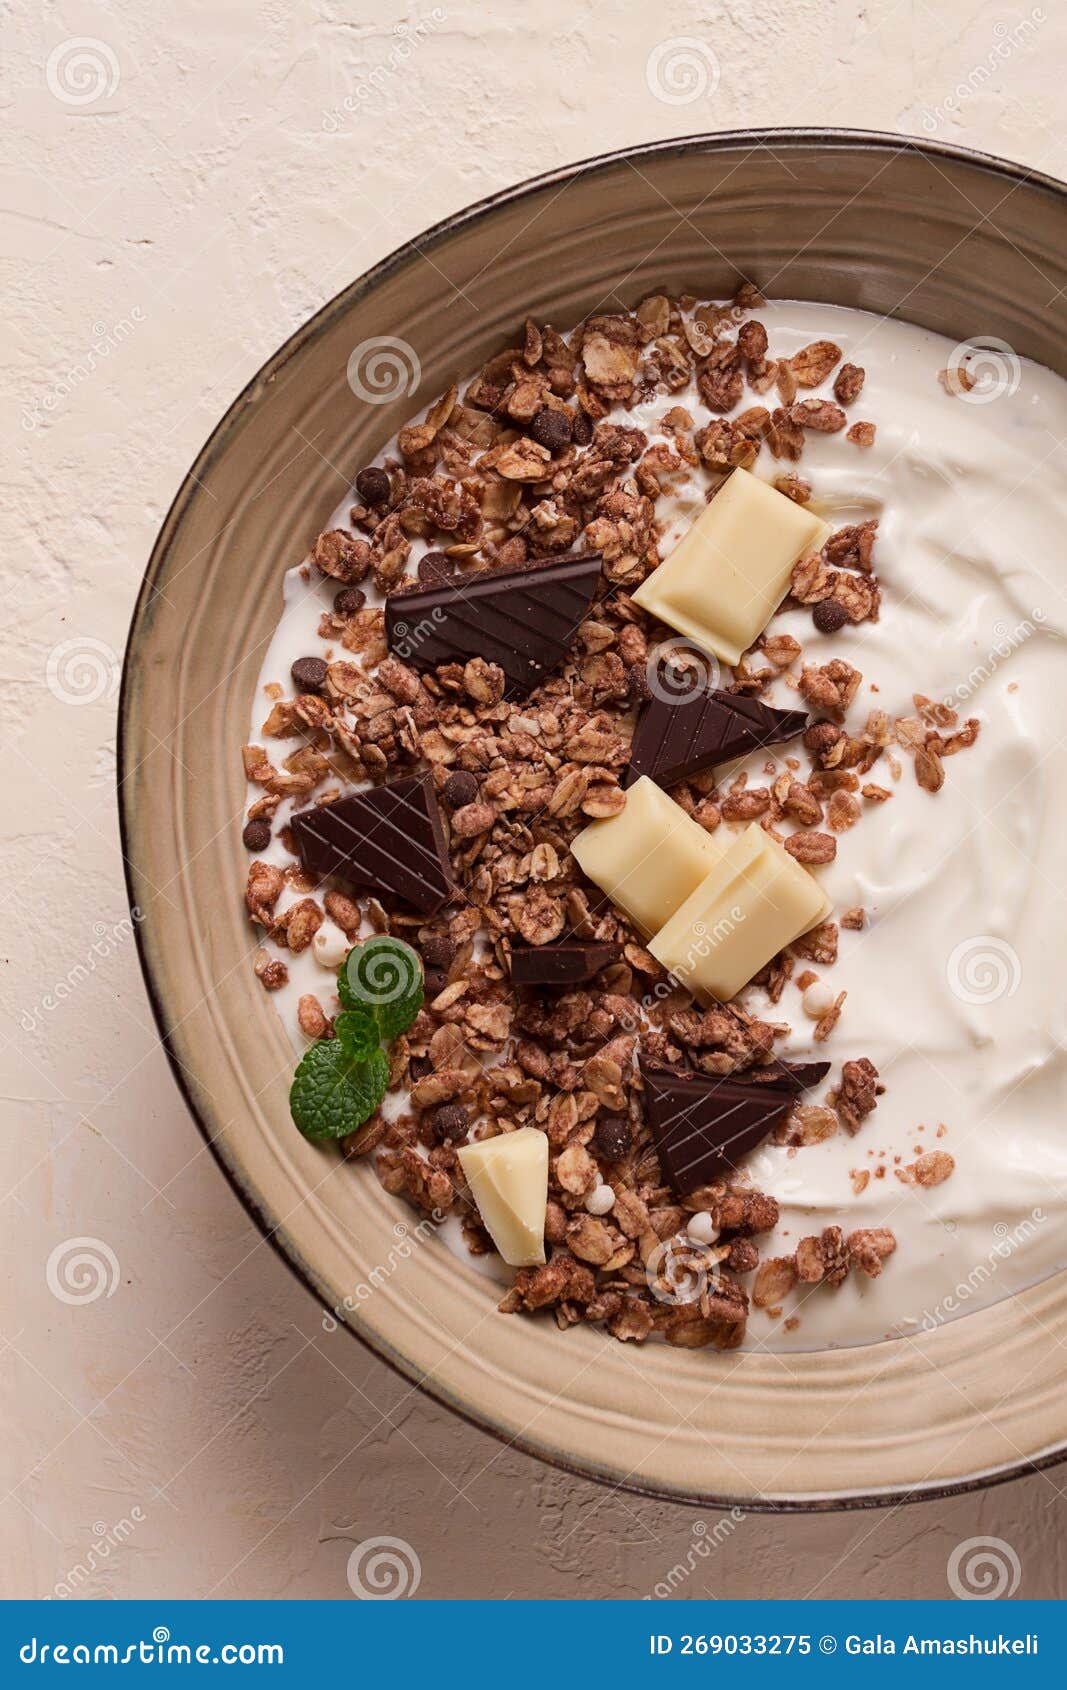 私房爆?巧克力燕麦脆?无需黄油的健康小零食，材料简单做法简单 - 哔哩哔哩